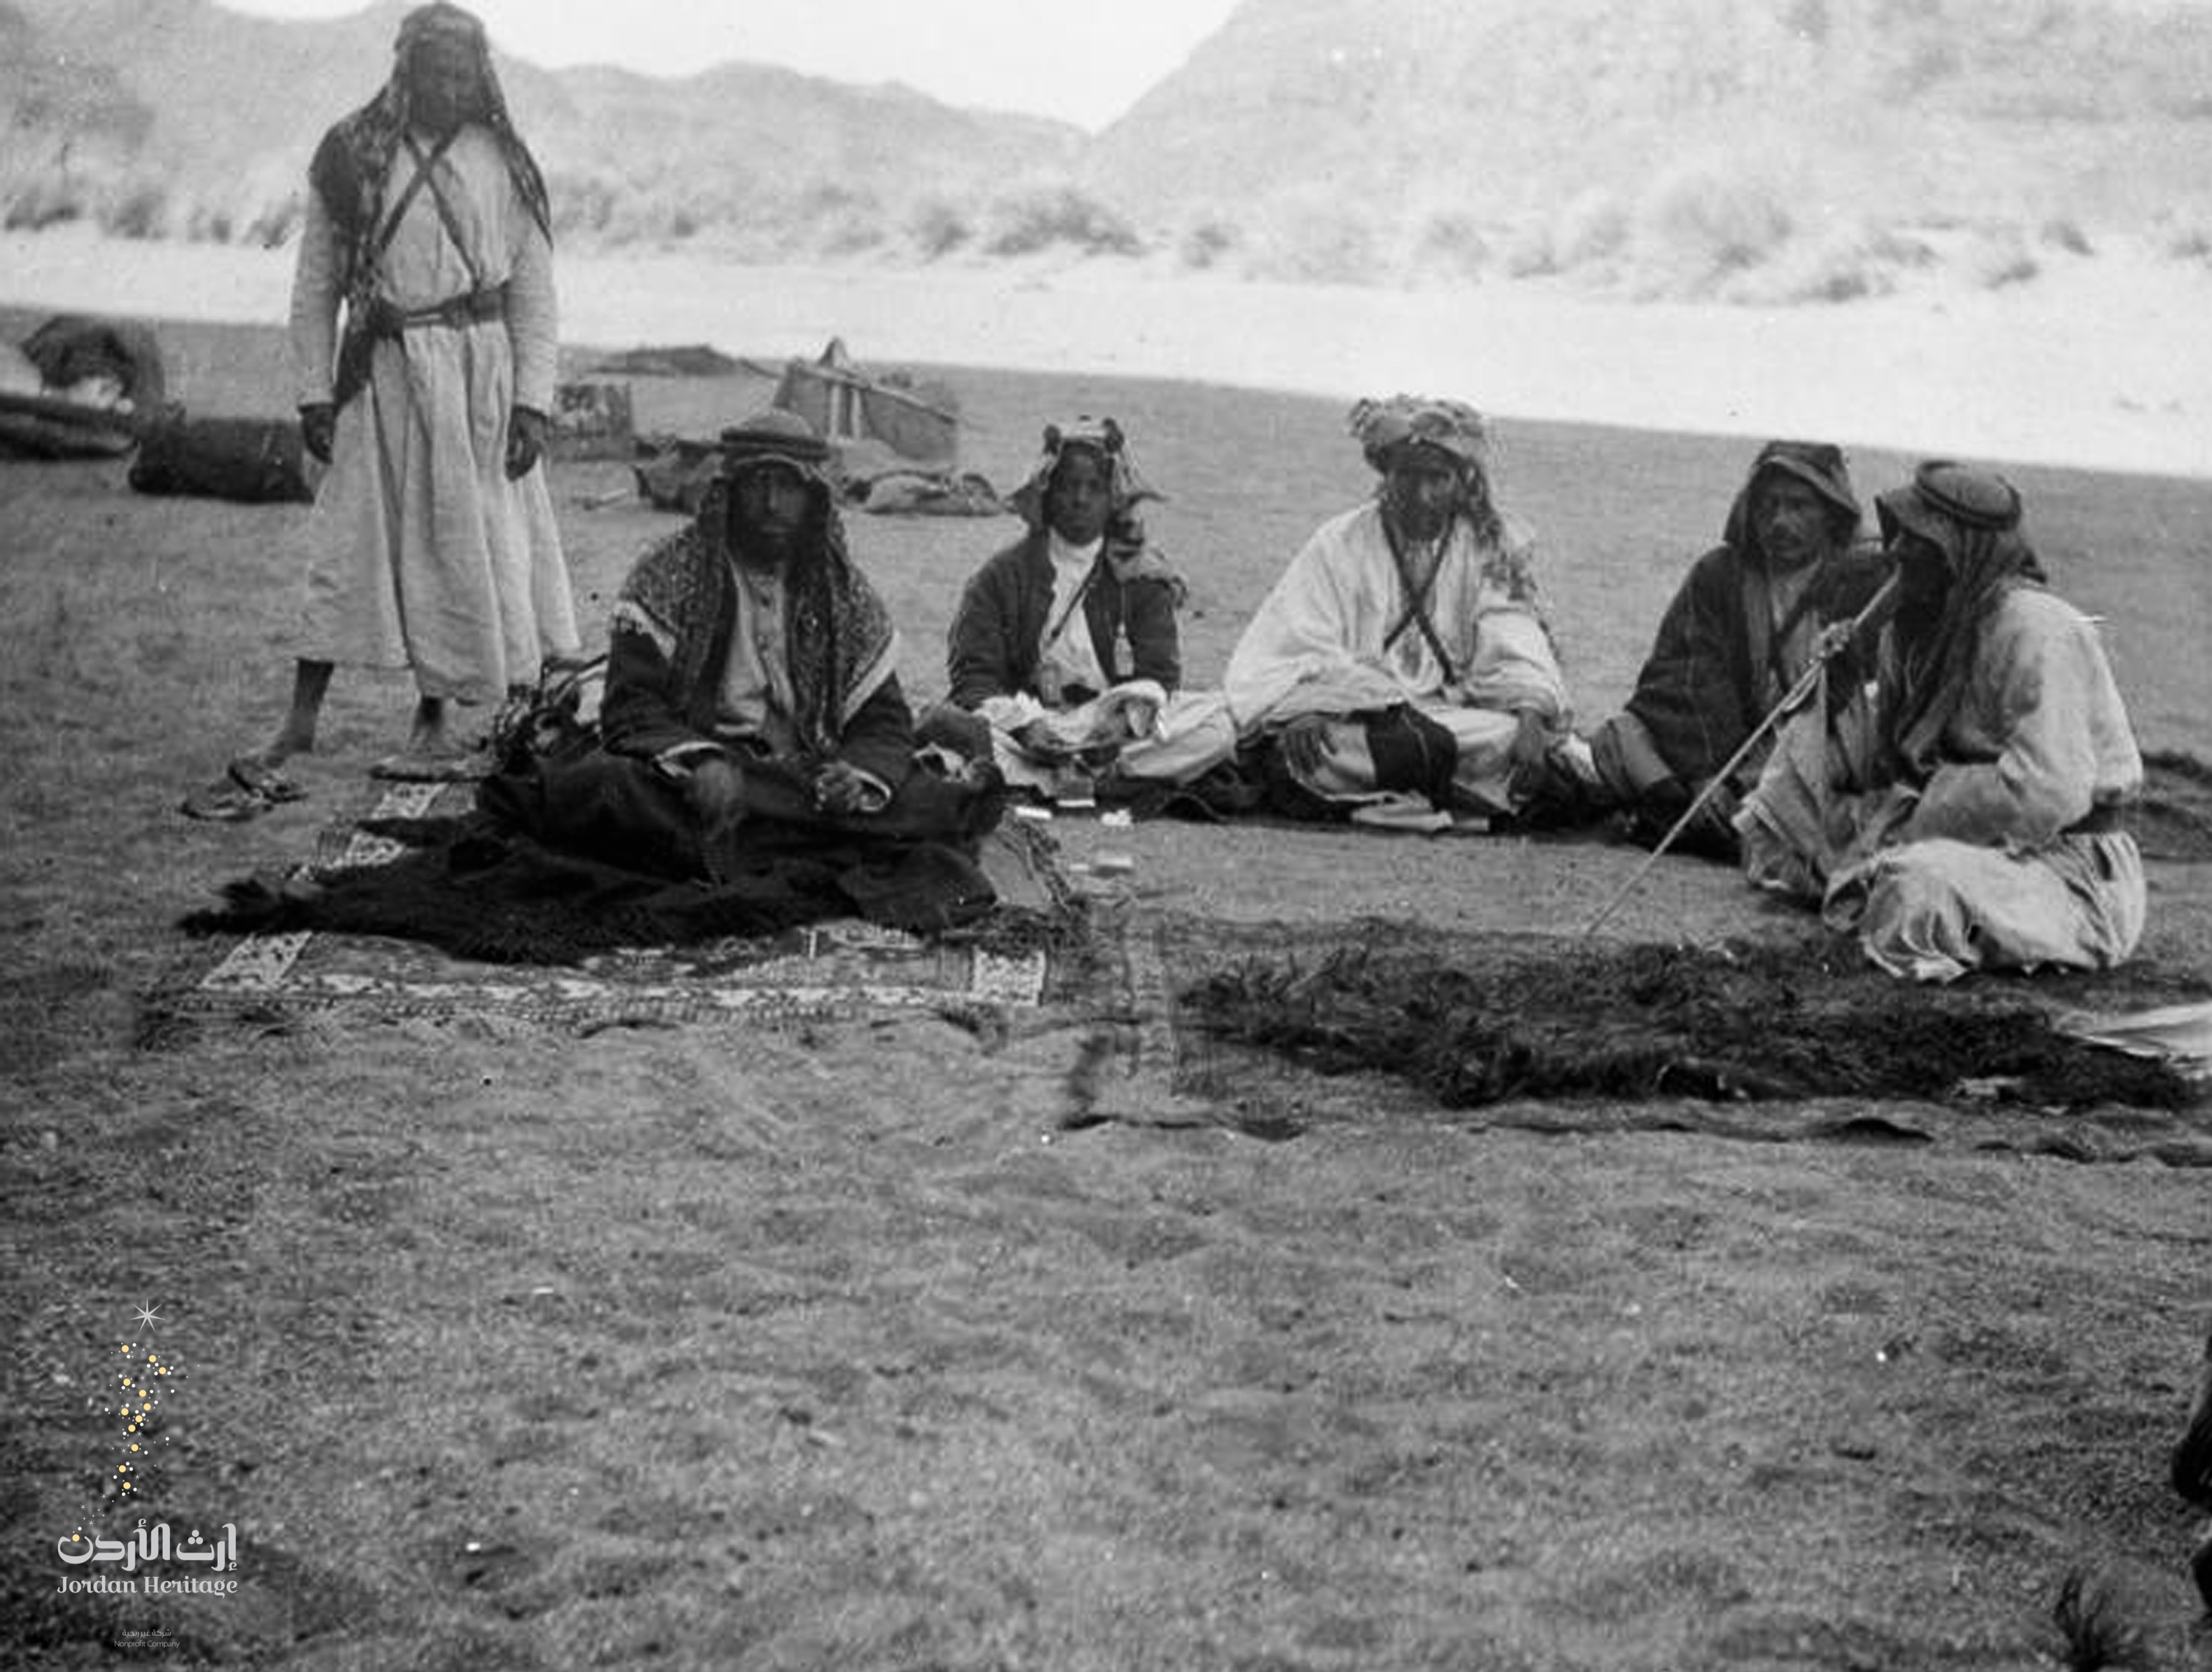 الشريف ناصر مع مجموعة من رجاله في إحدى معسكرات الثورة